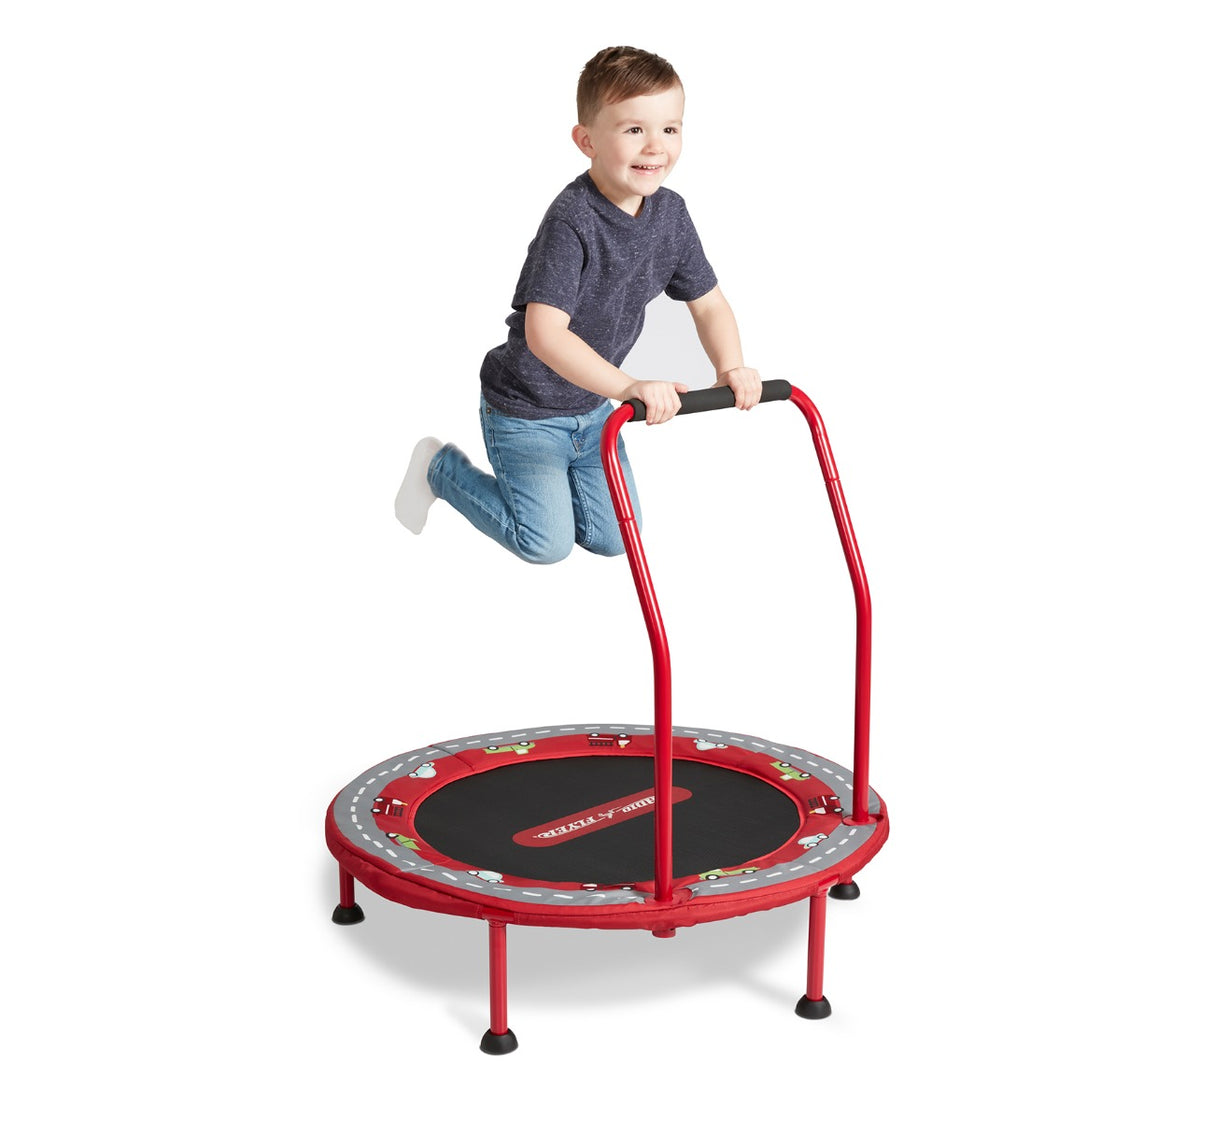 Boy Jumping on 2-in-1 Kids' Trampoline